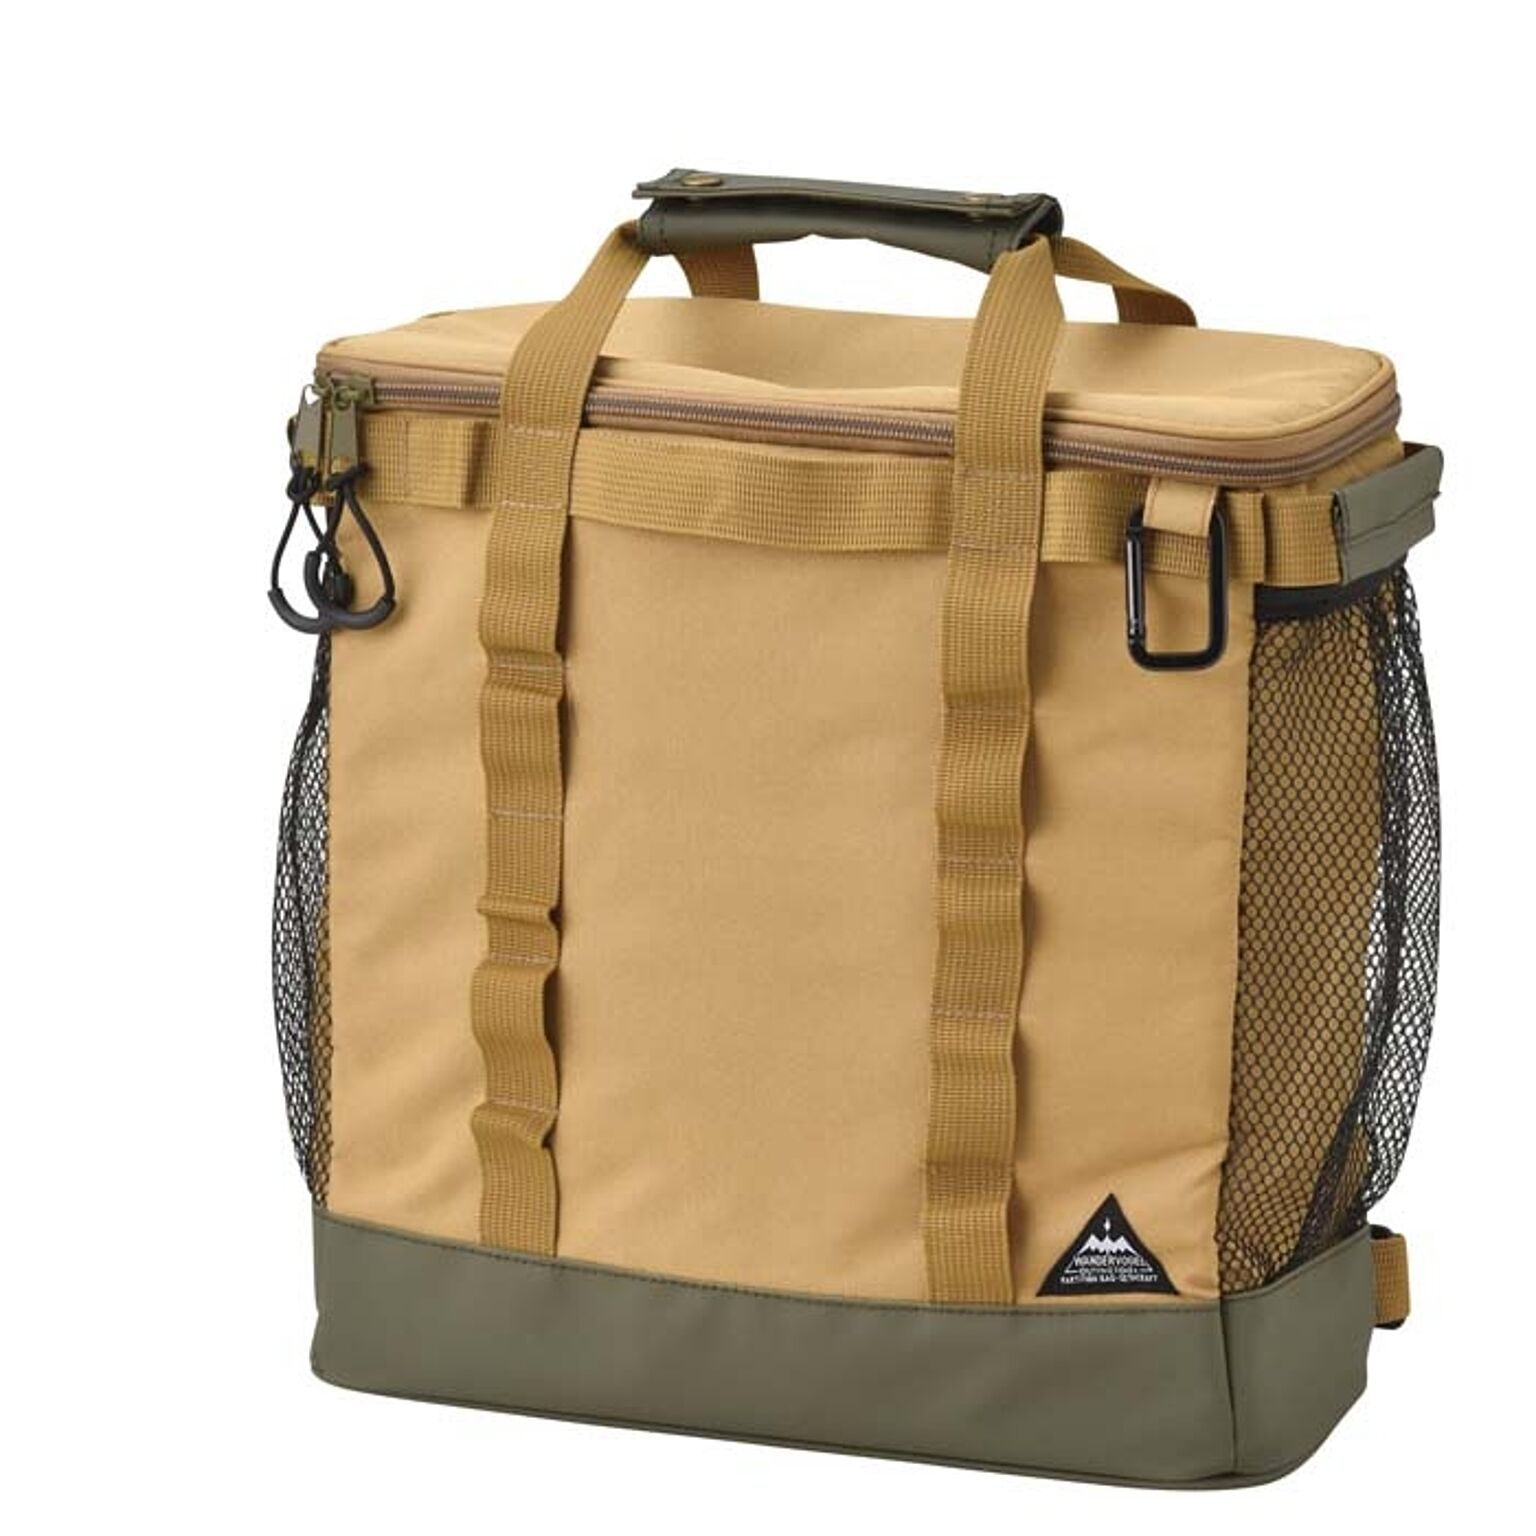 鞄 リュック バッグ キャンプ アウトドア バッグパック 保冷バッグ ボックス  おしゃれ コンパクト セトクラフト Lサイズ 10L